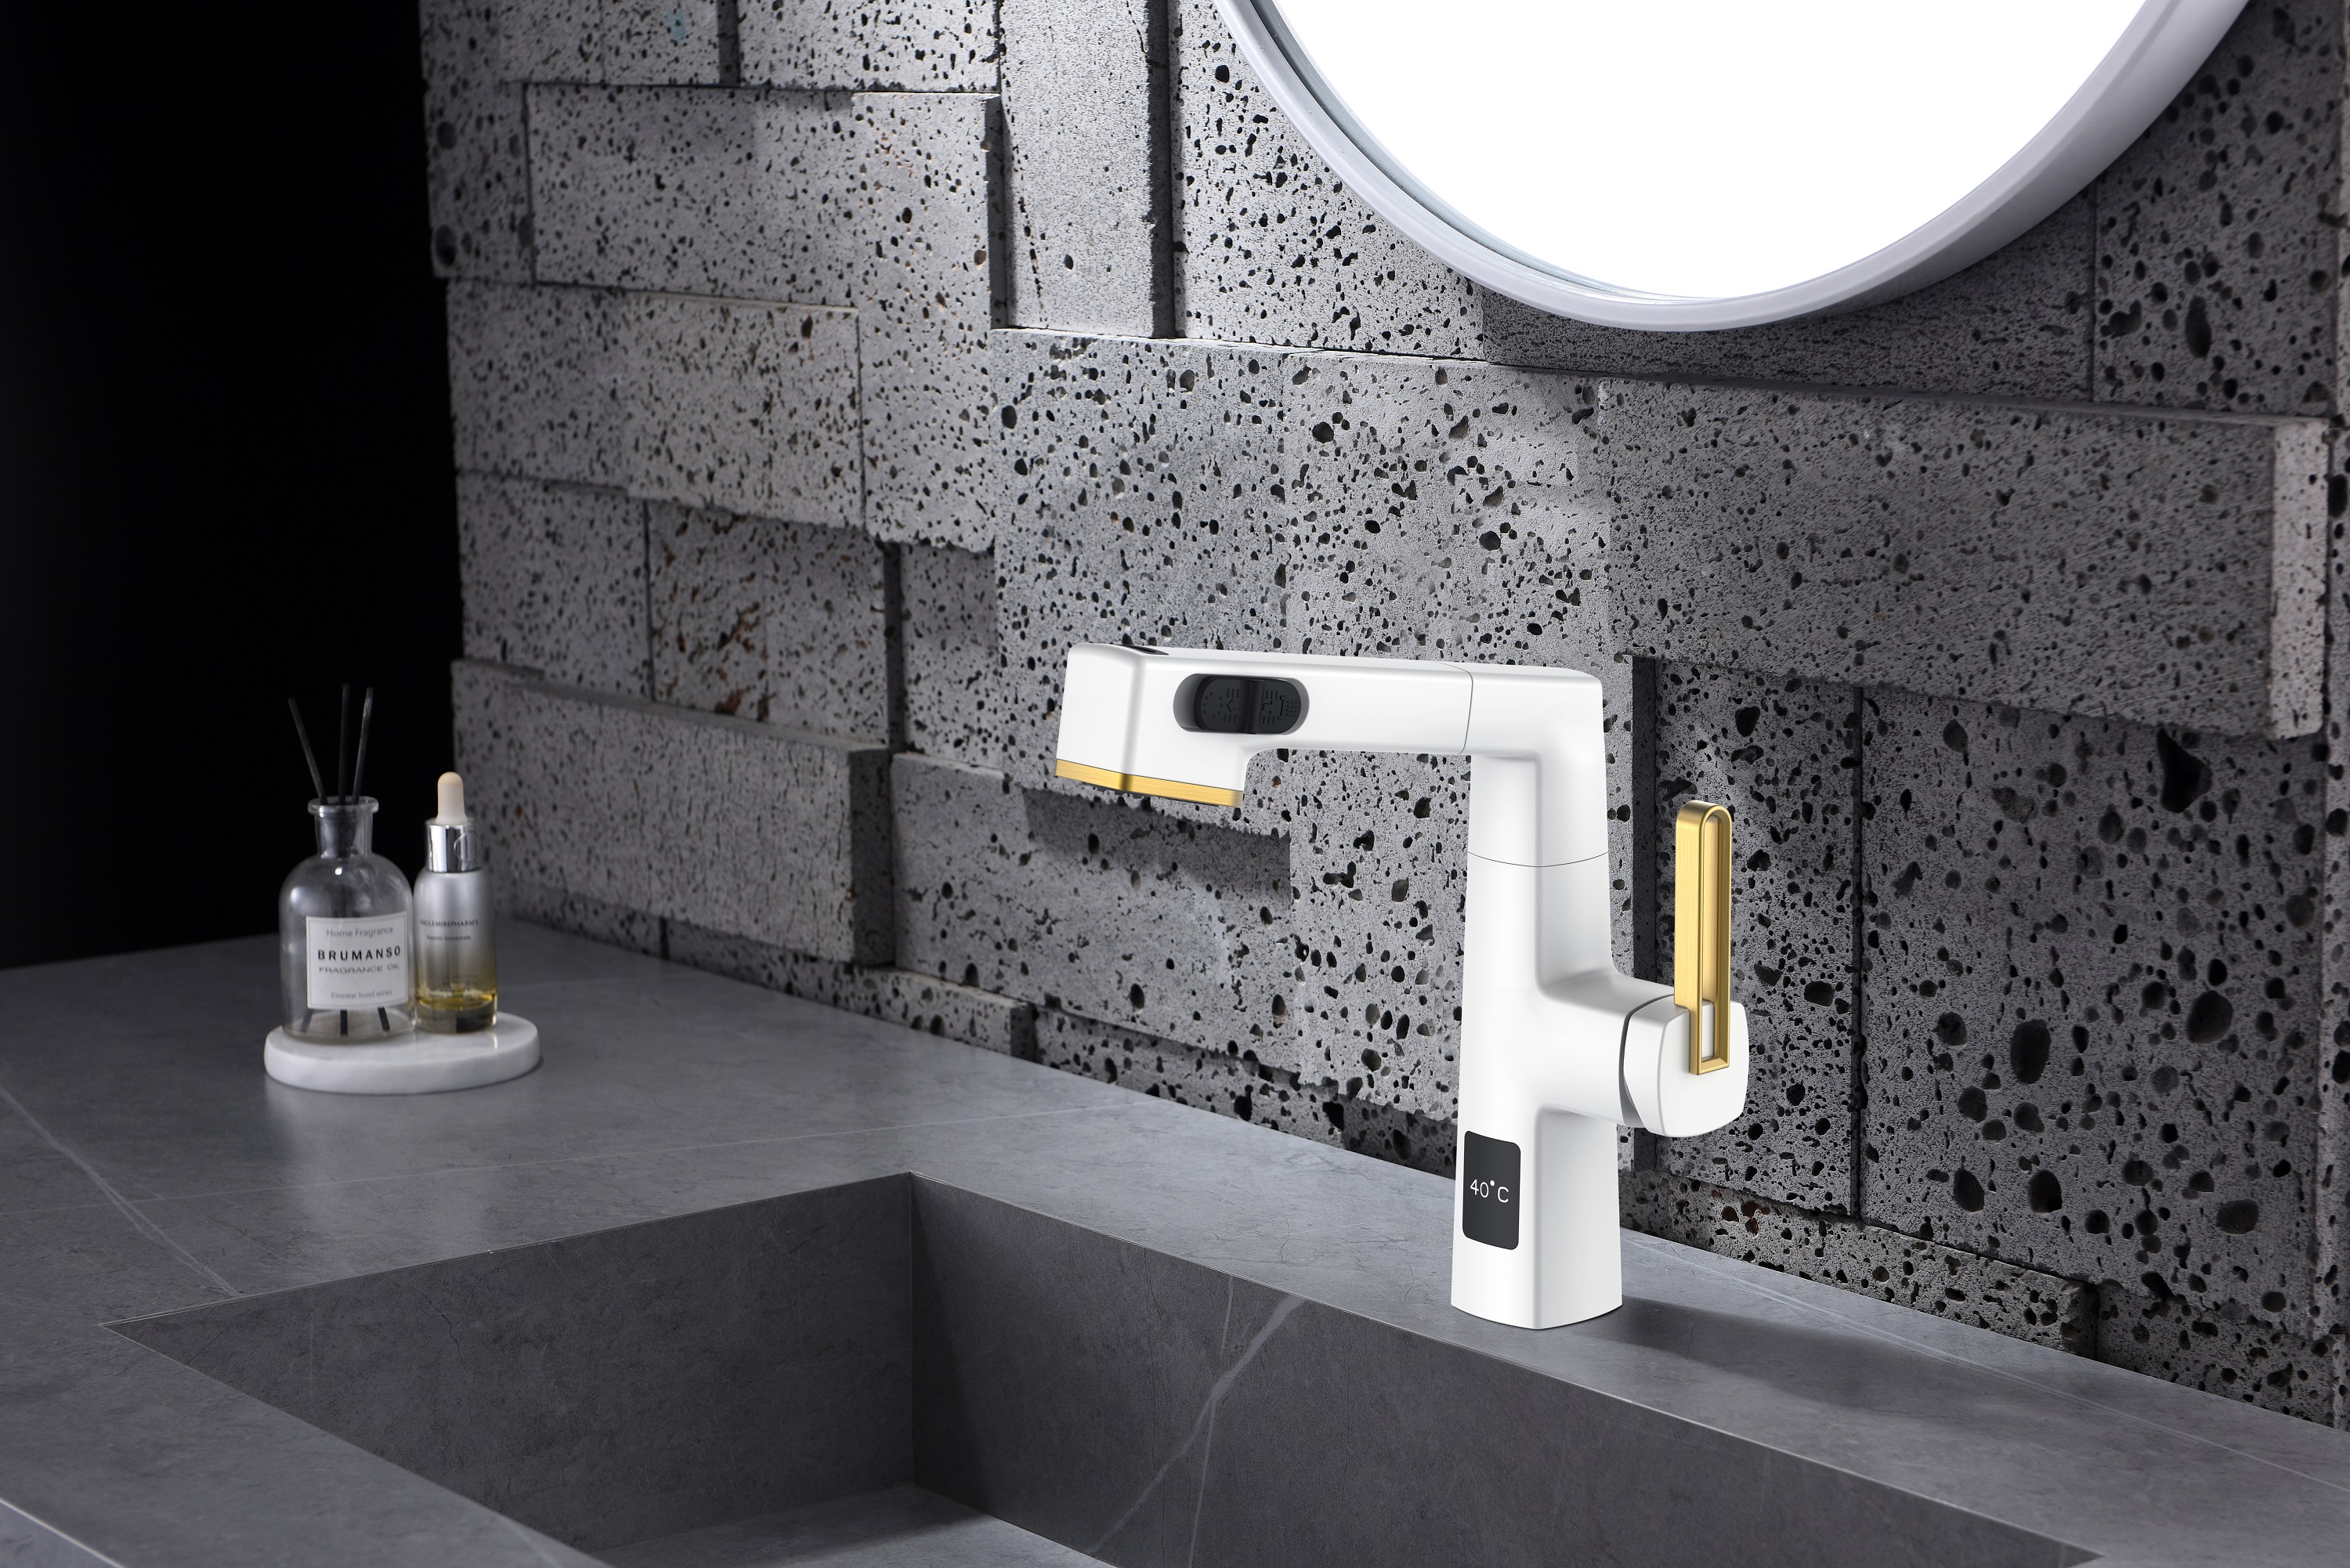  Hauteur réglable de robinet de salle de bains de conception unique blanche et d'or d'affichage de la température